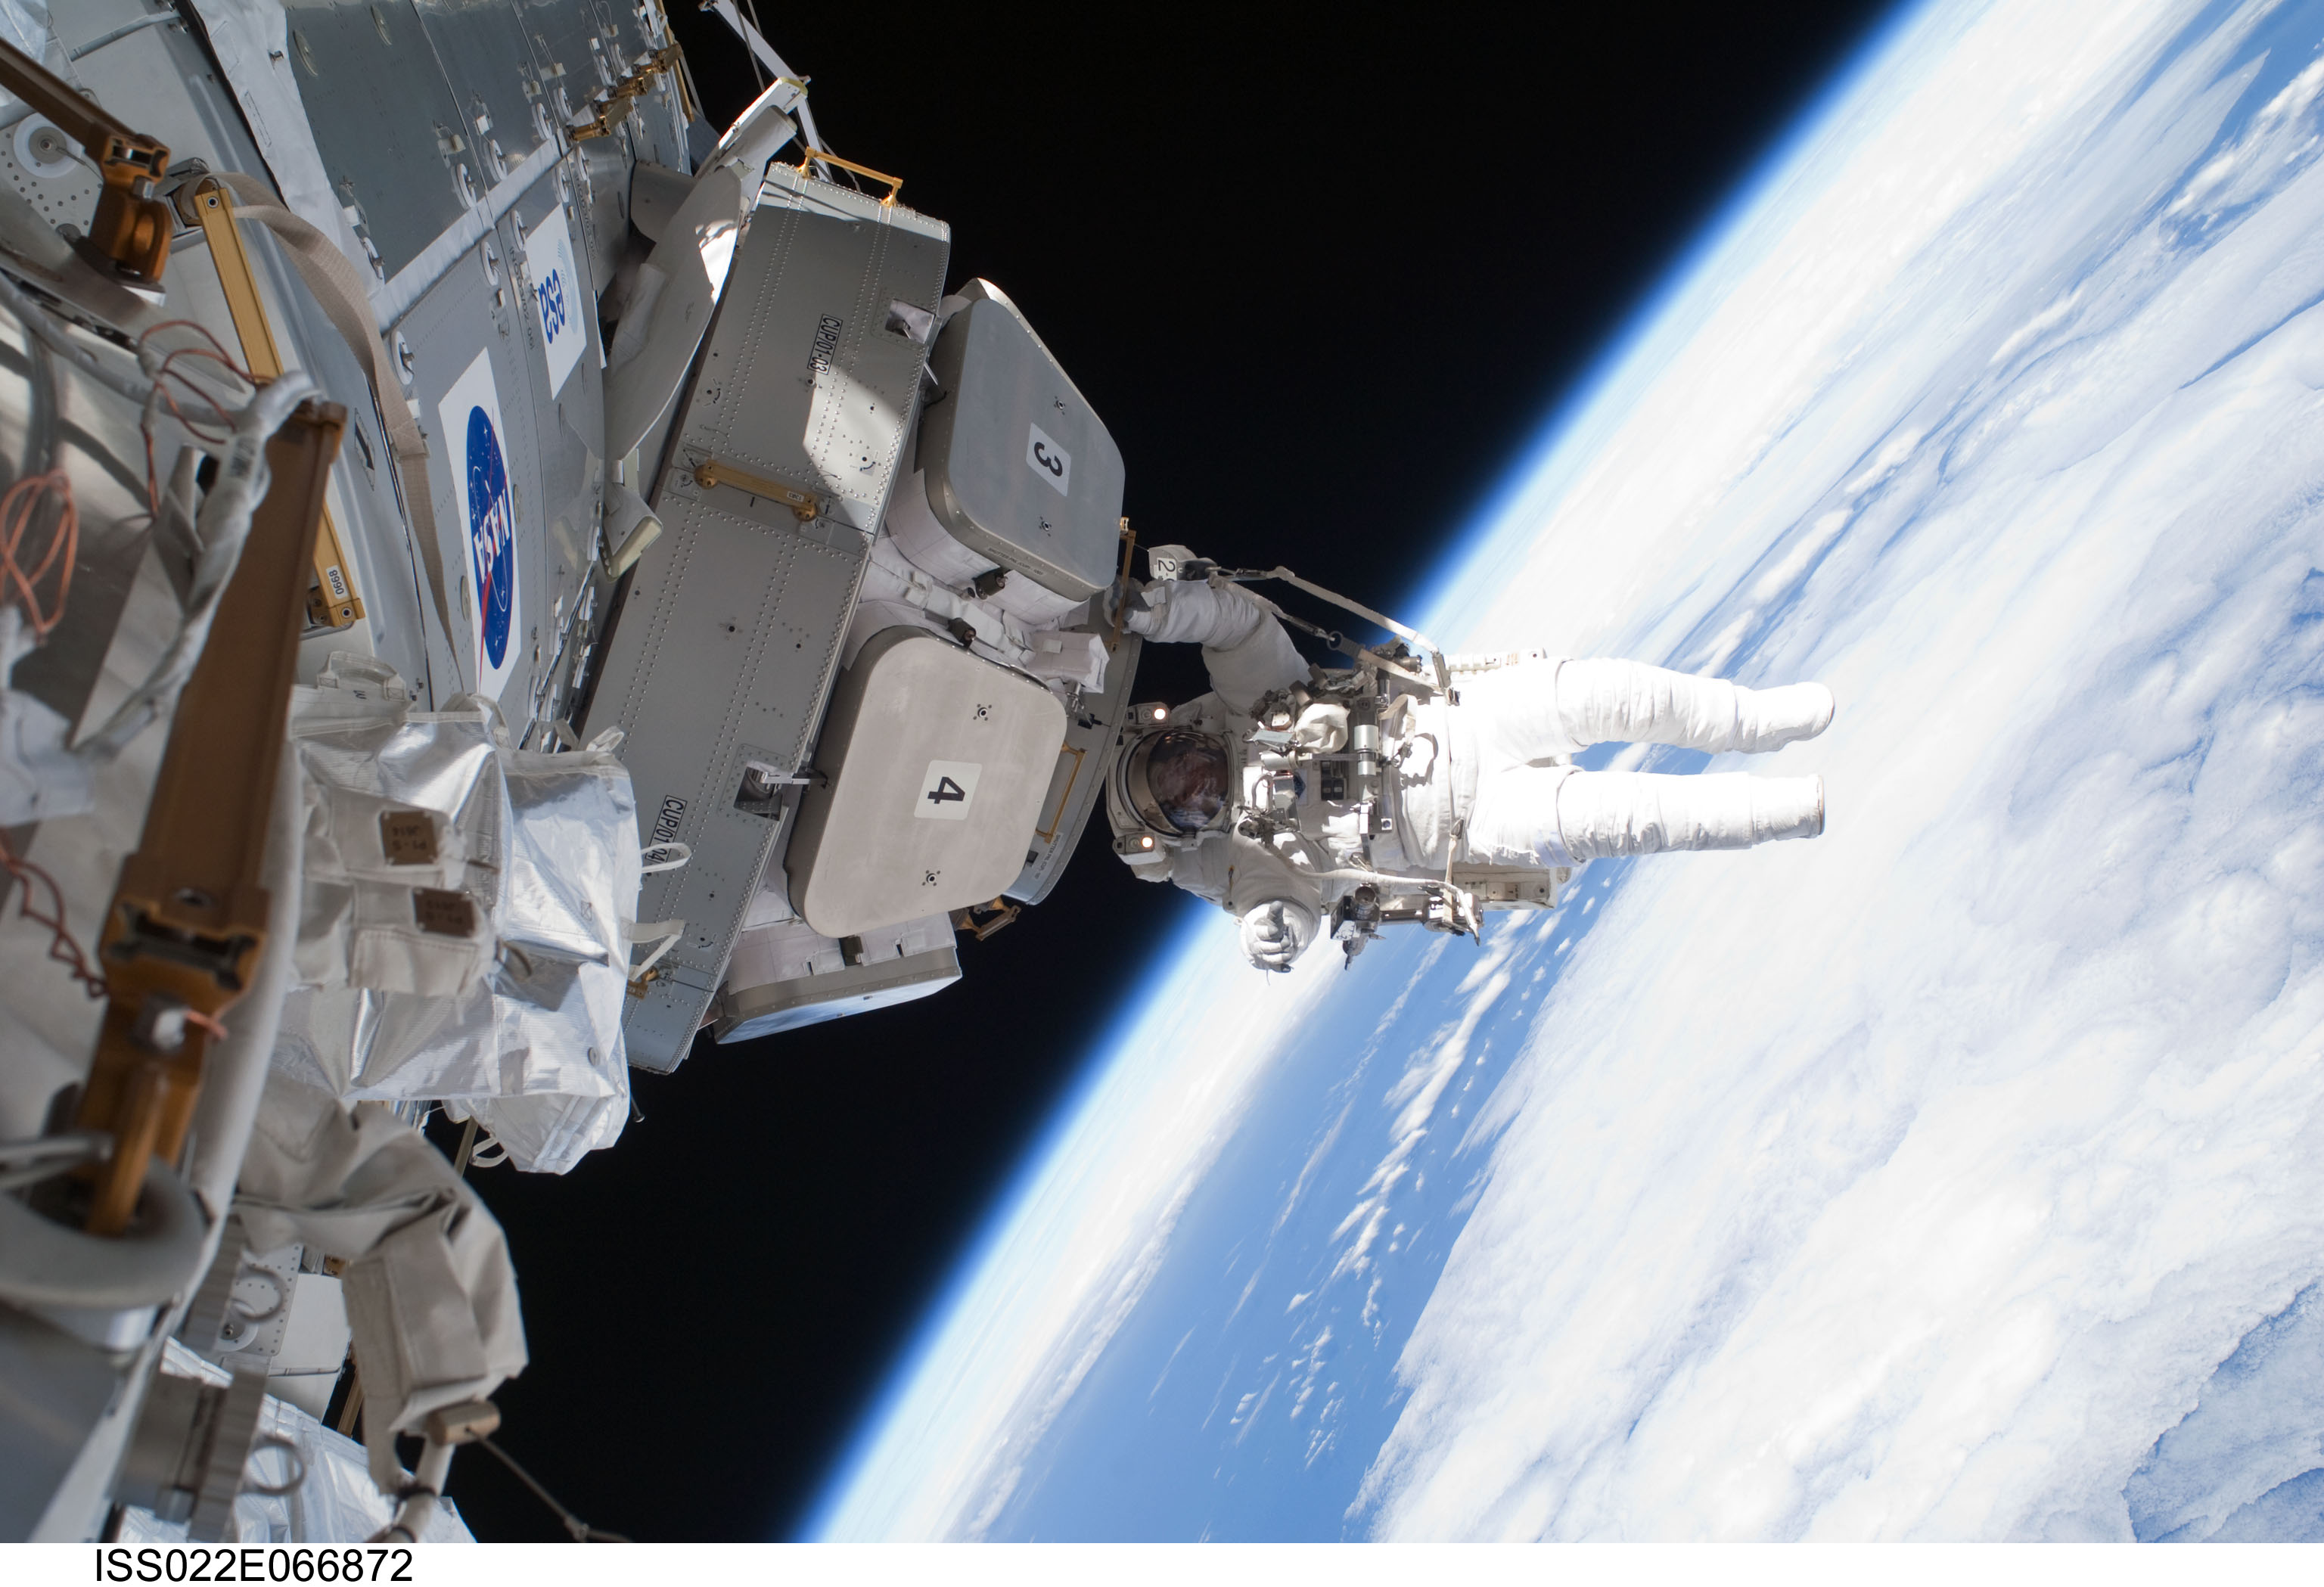 Astronavt ustanavlivaet panoramnoe okno v kosmos